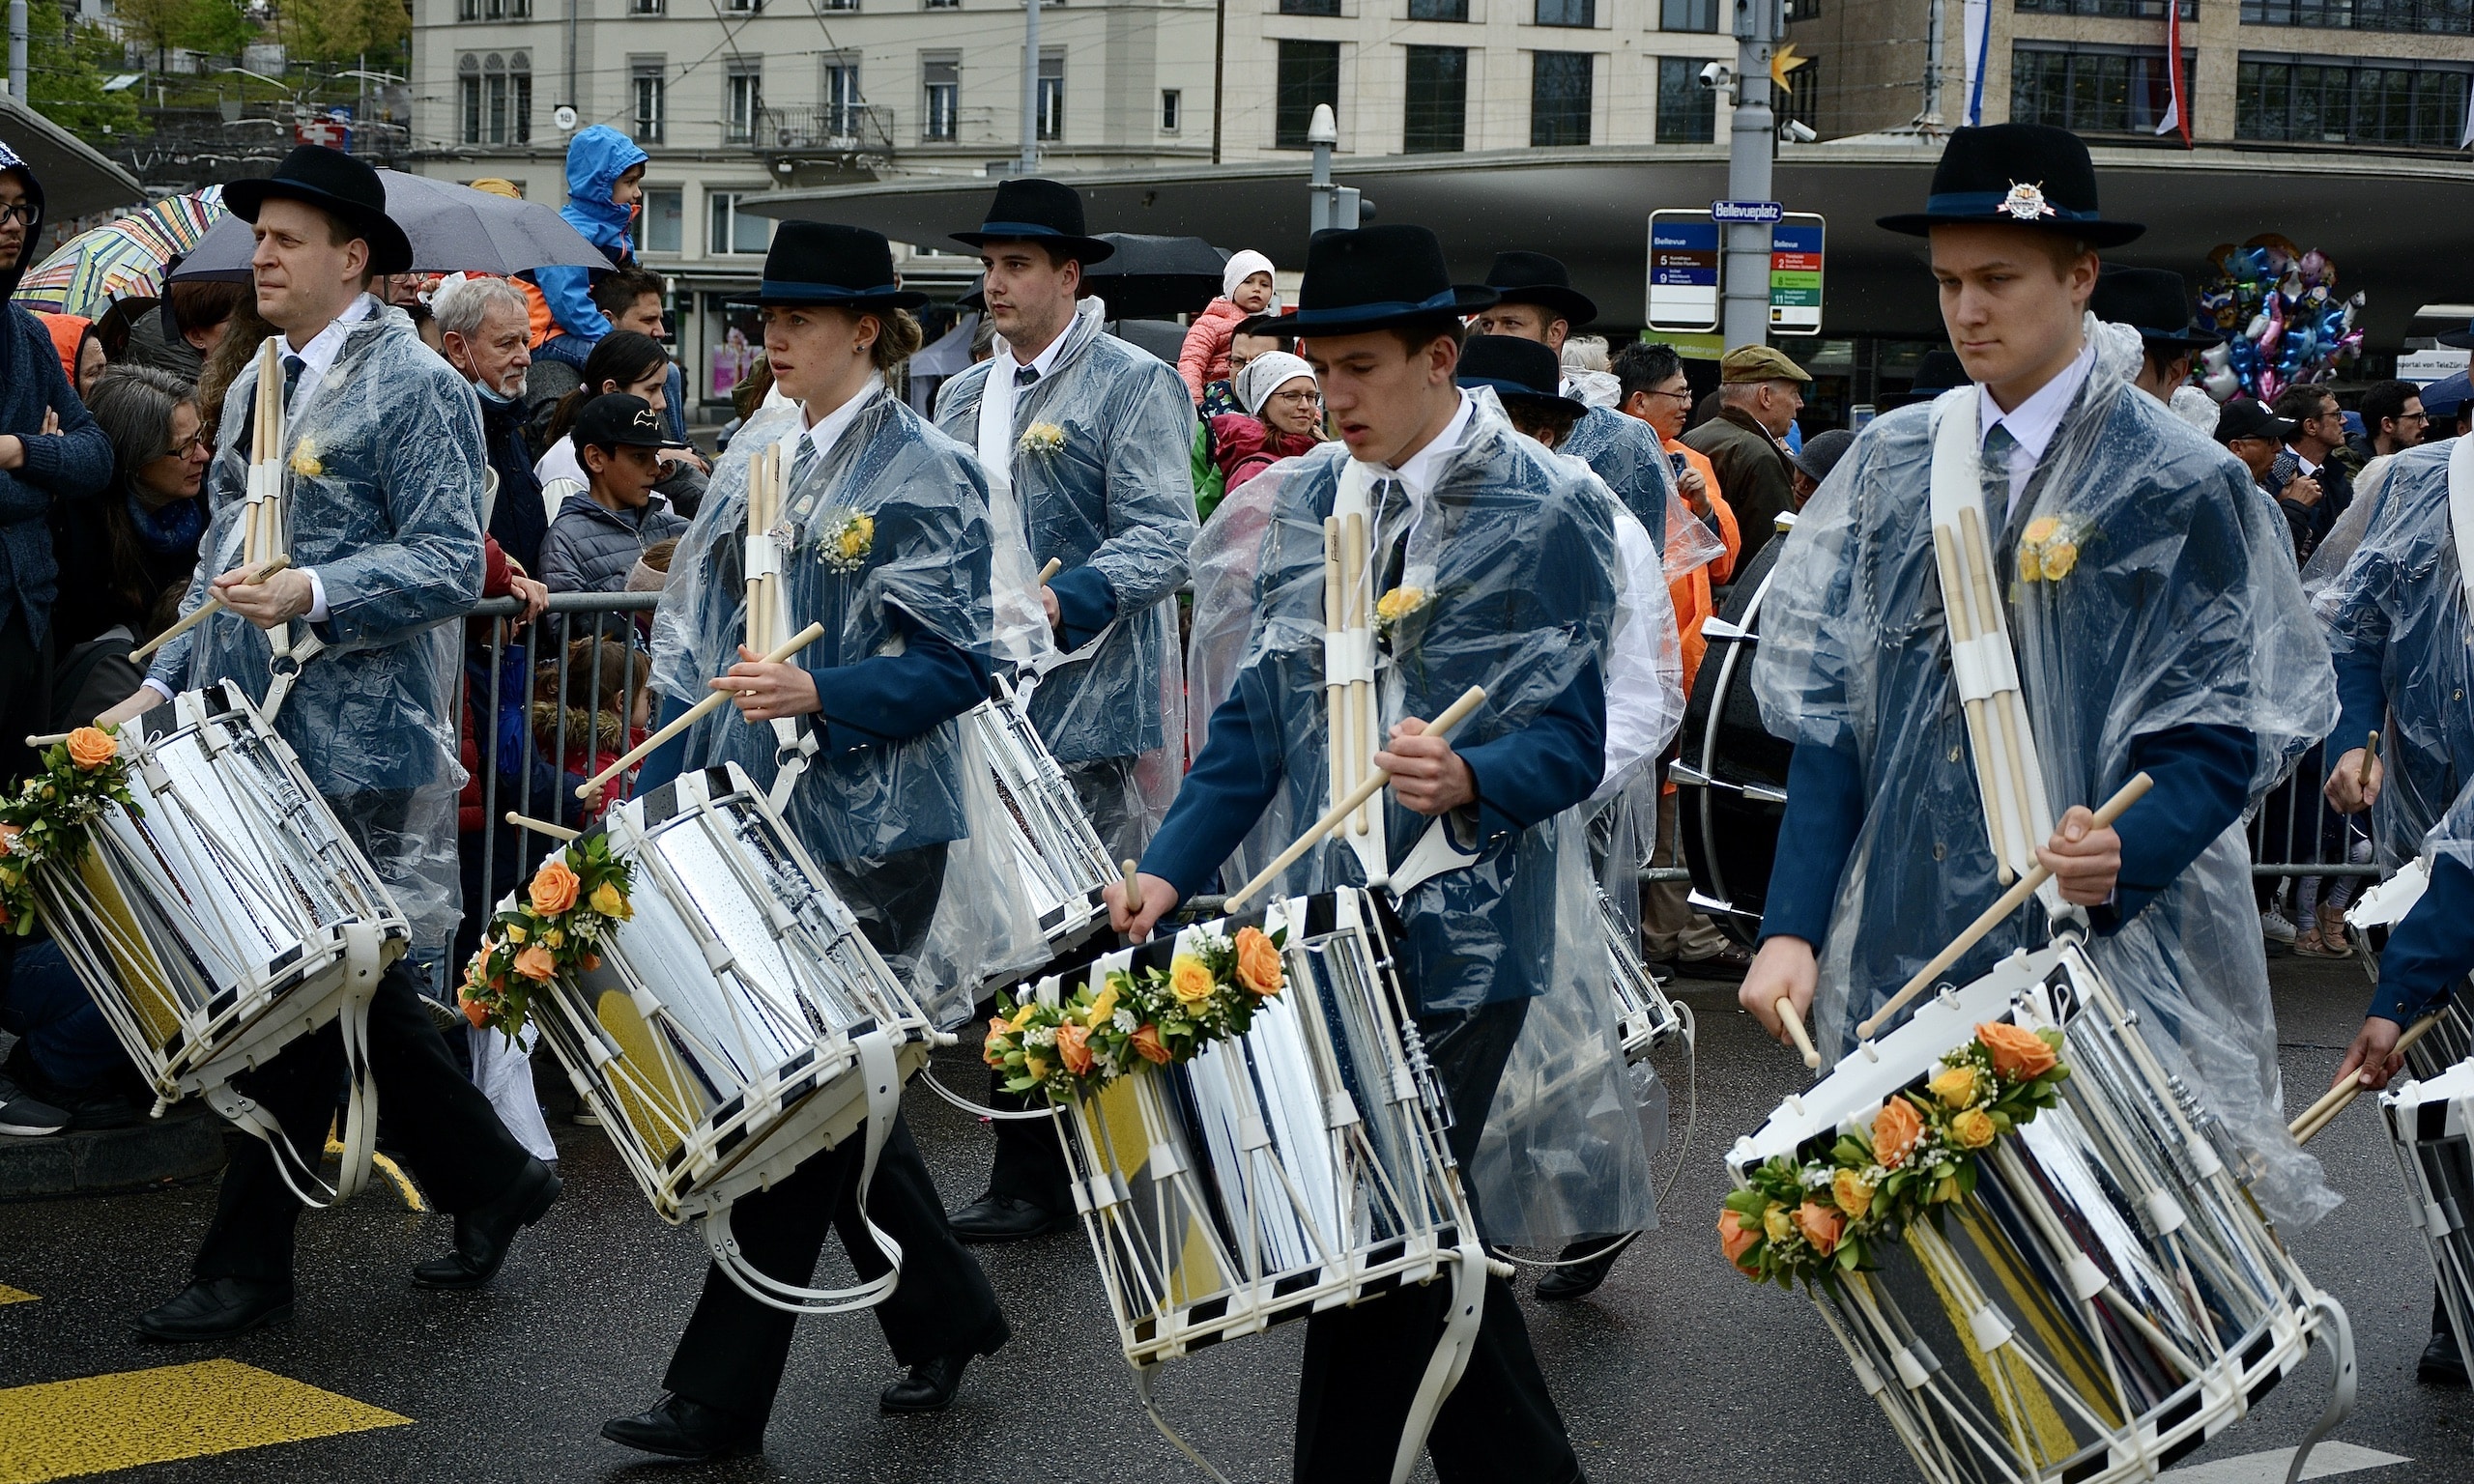 Весенний фестиваль «Шестизвонье» идет по Цюриху в сопровождении музыки. (© C. Panch)